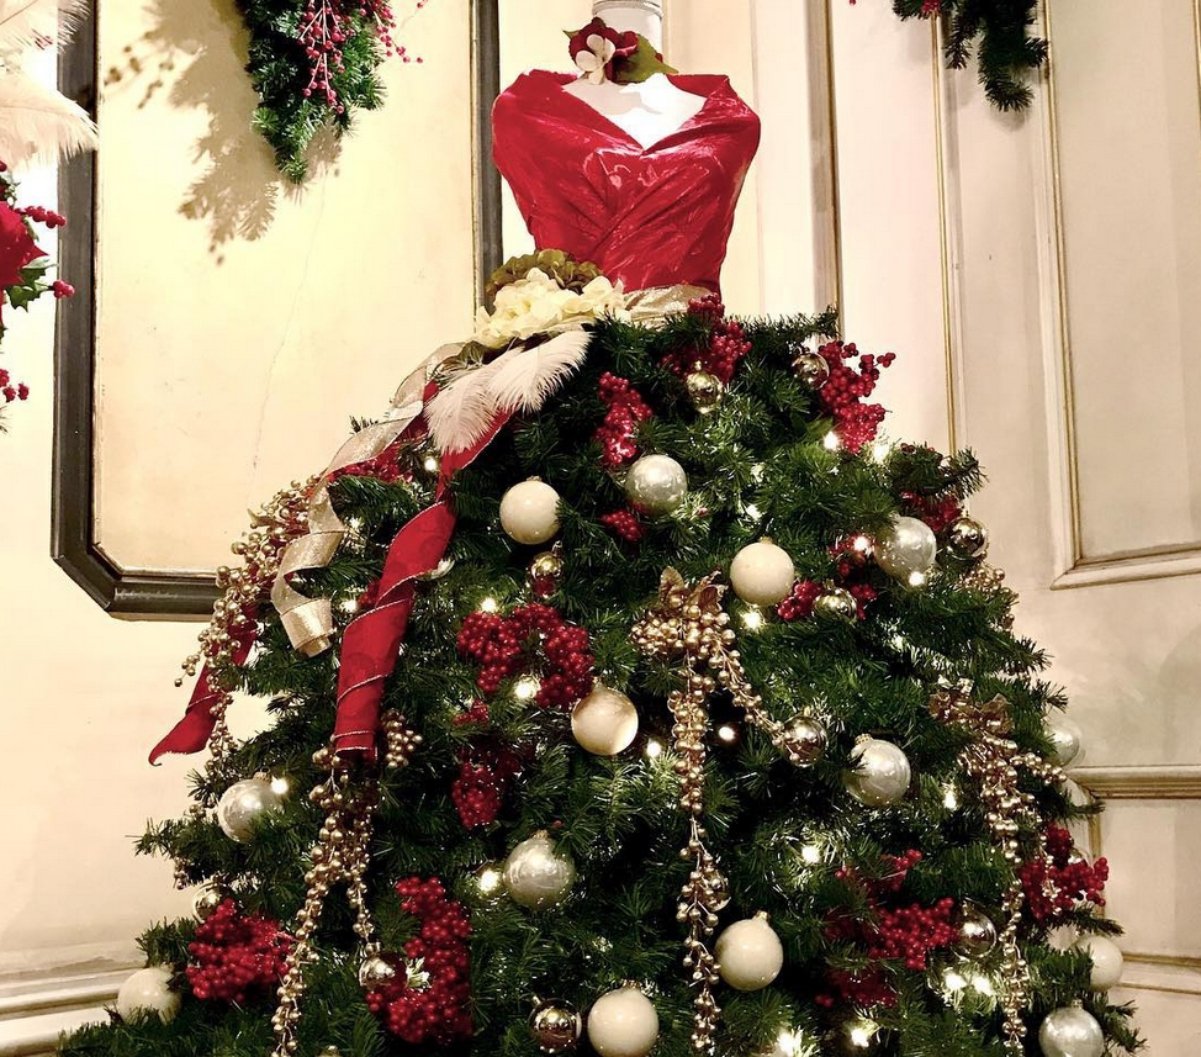 La nueva tendencia navideña viene en forma de maniquíes con vestido de árbol de Navidad